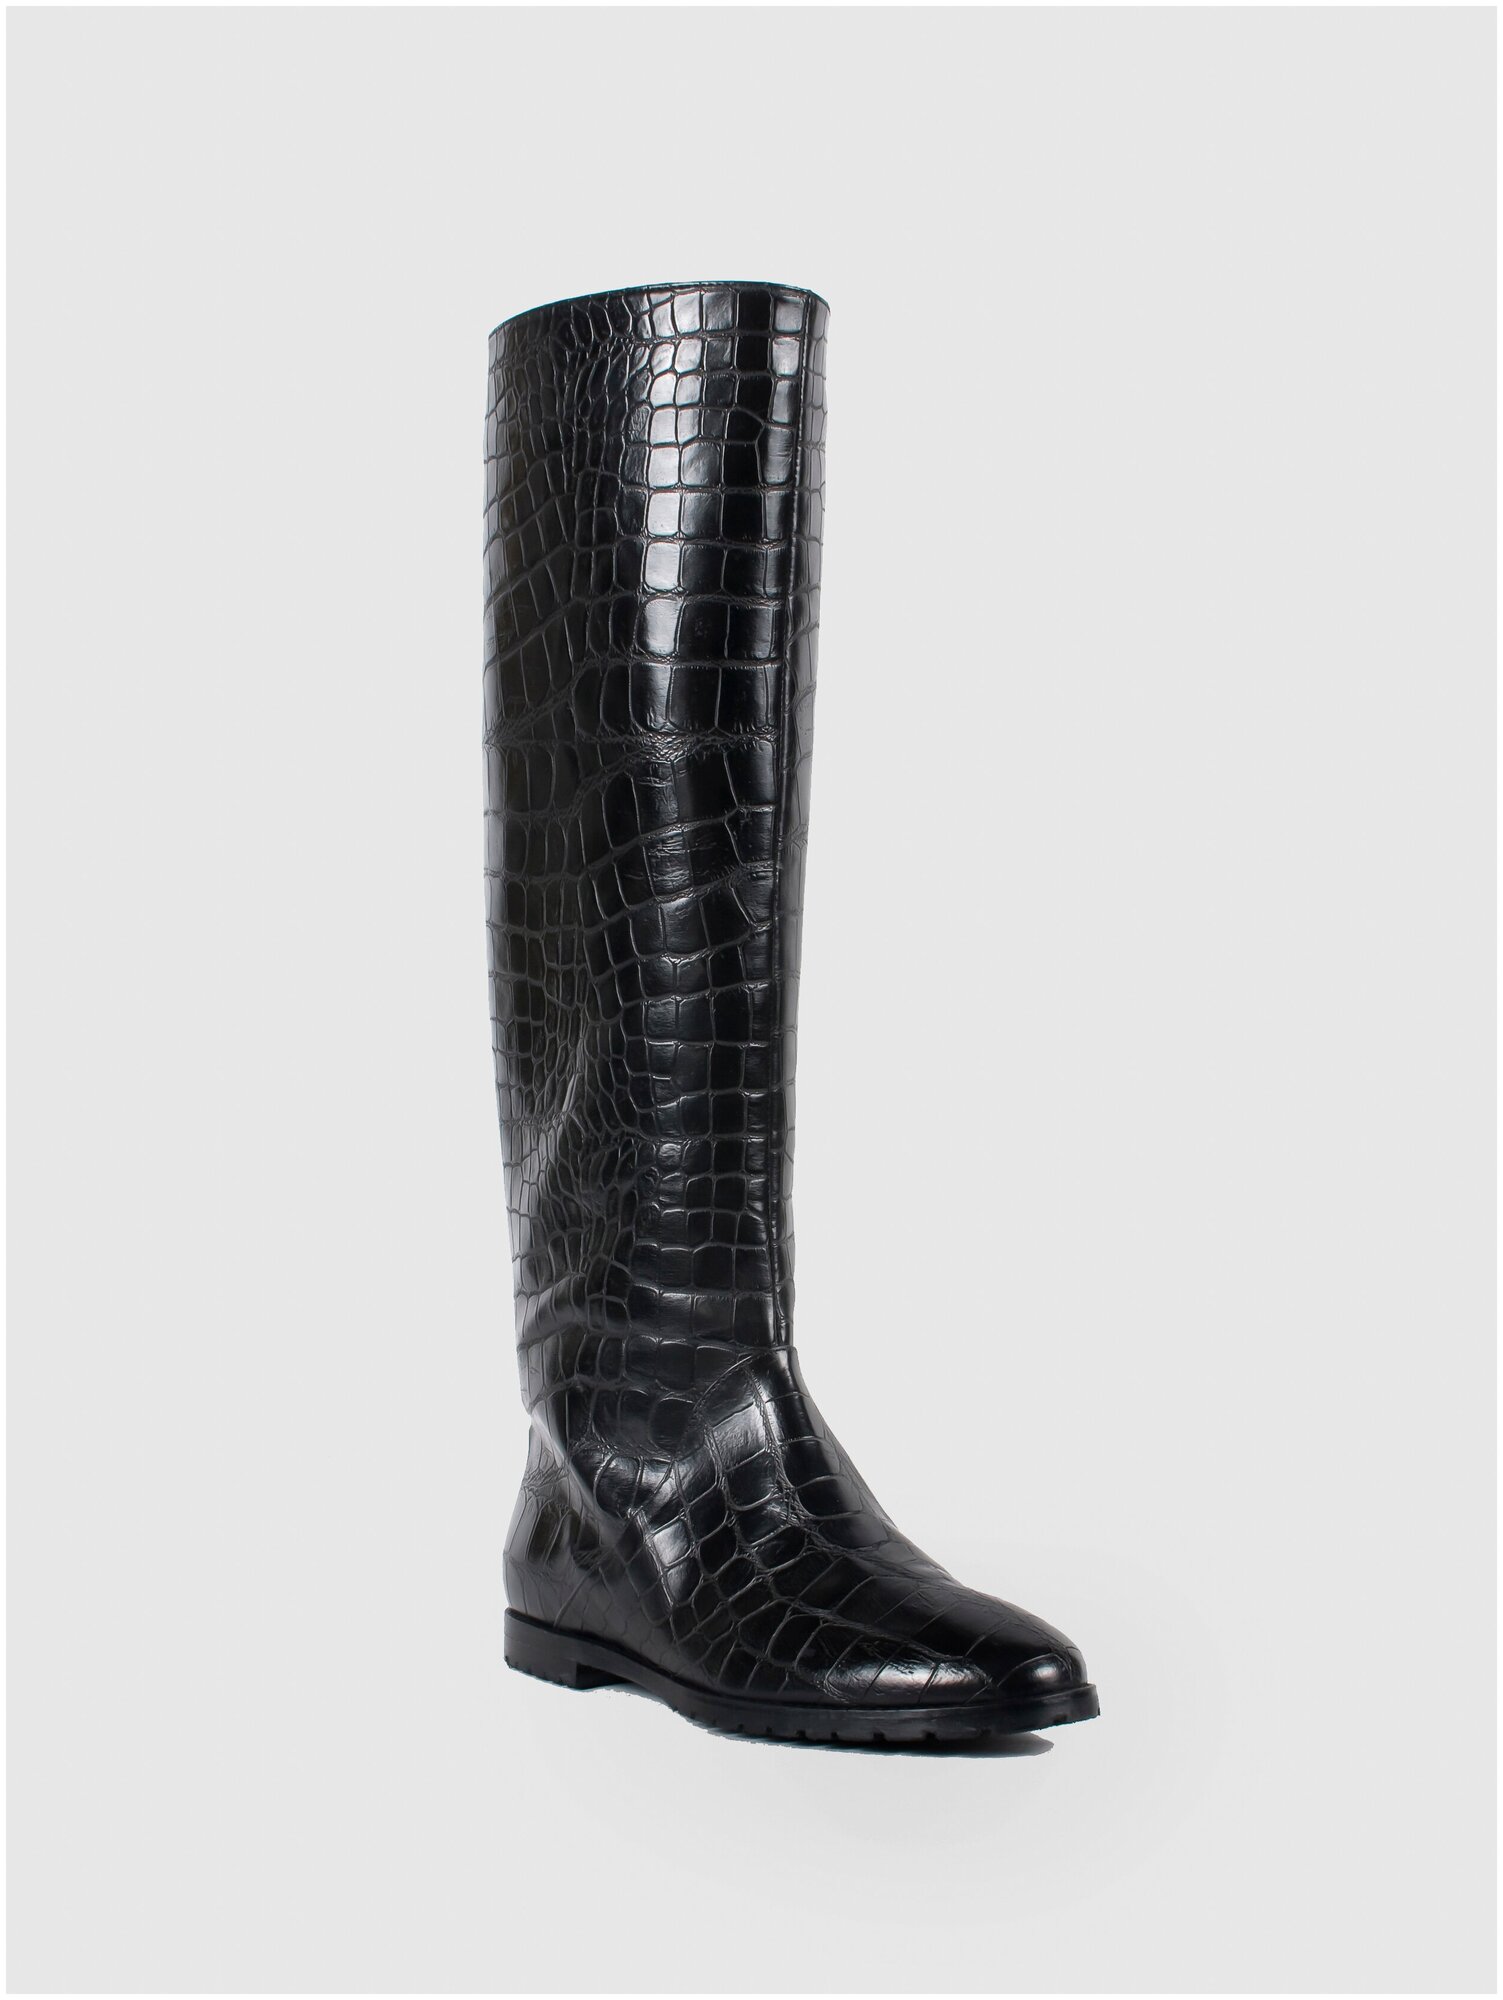 Женская обувь E-SKYE  сапоги модель Трубы натуральная кожа- наплак тисненная под крокодил черный цвет